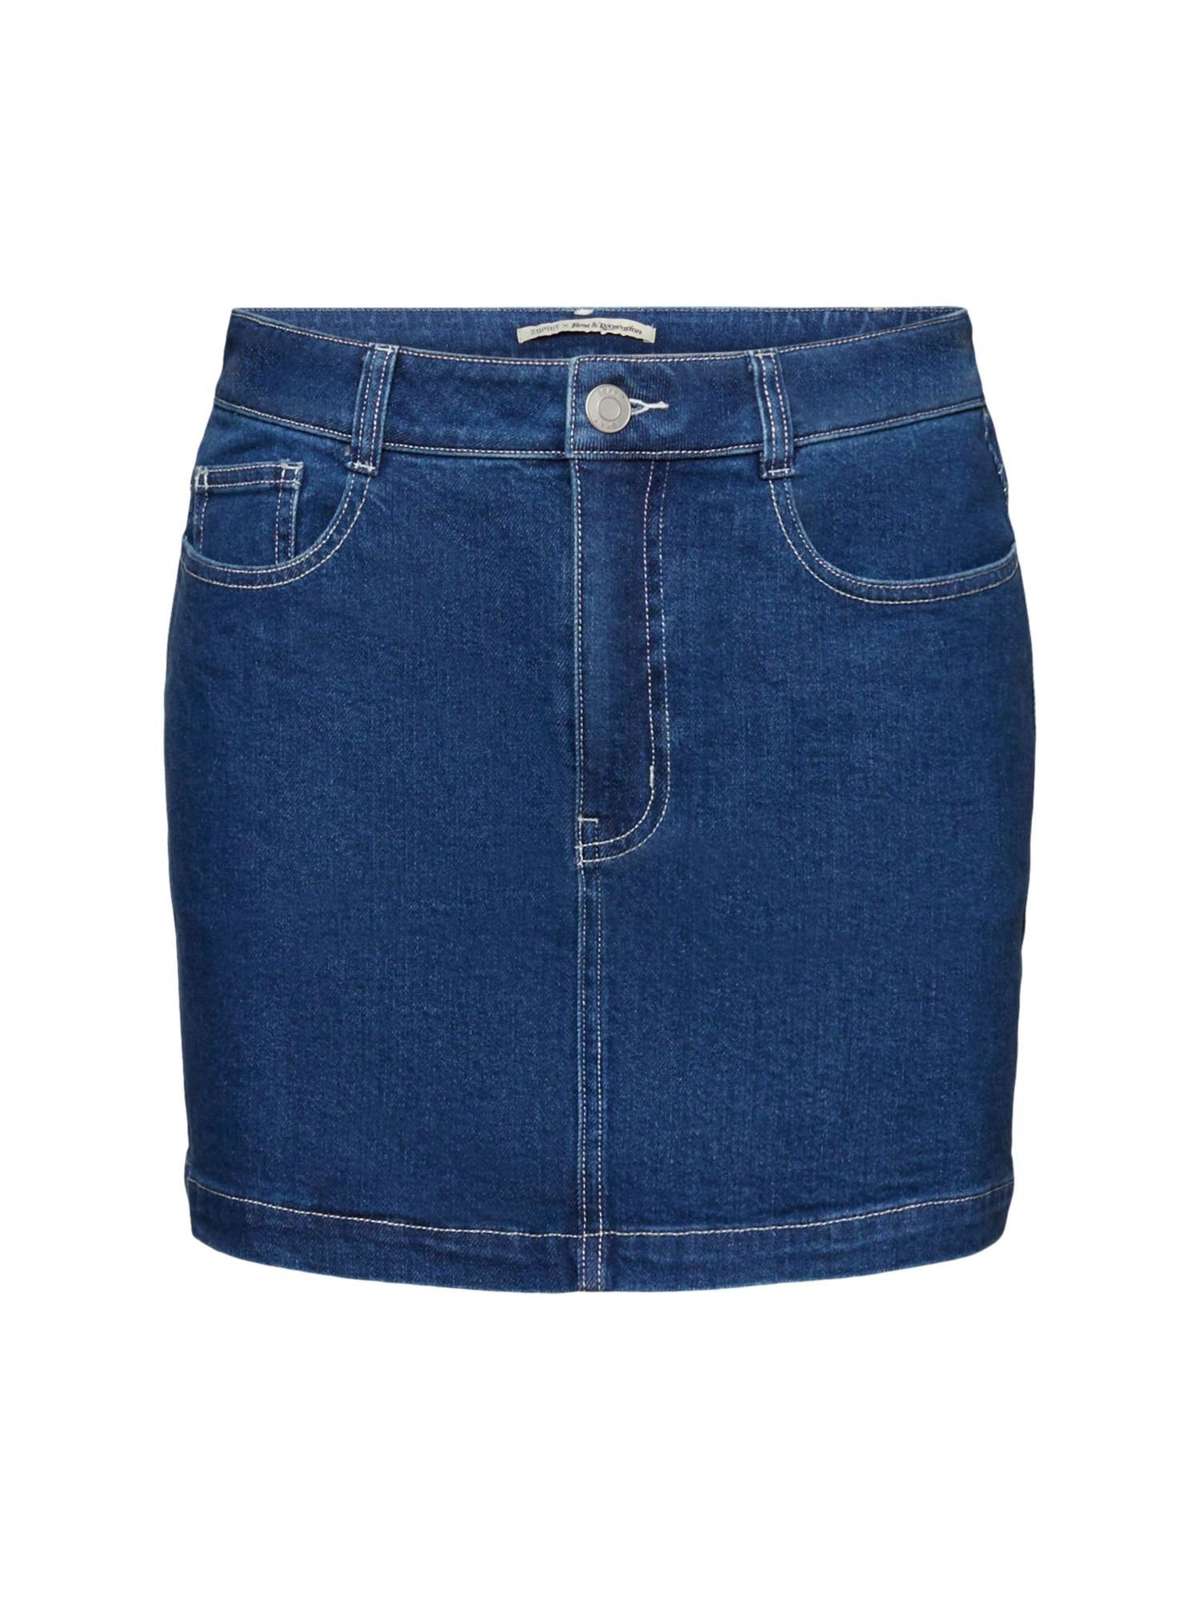 Джинсовая юбка джинсовая юбка мини длины